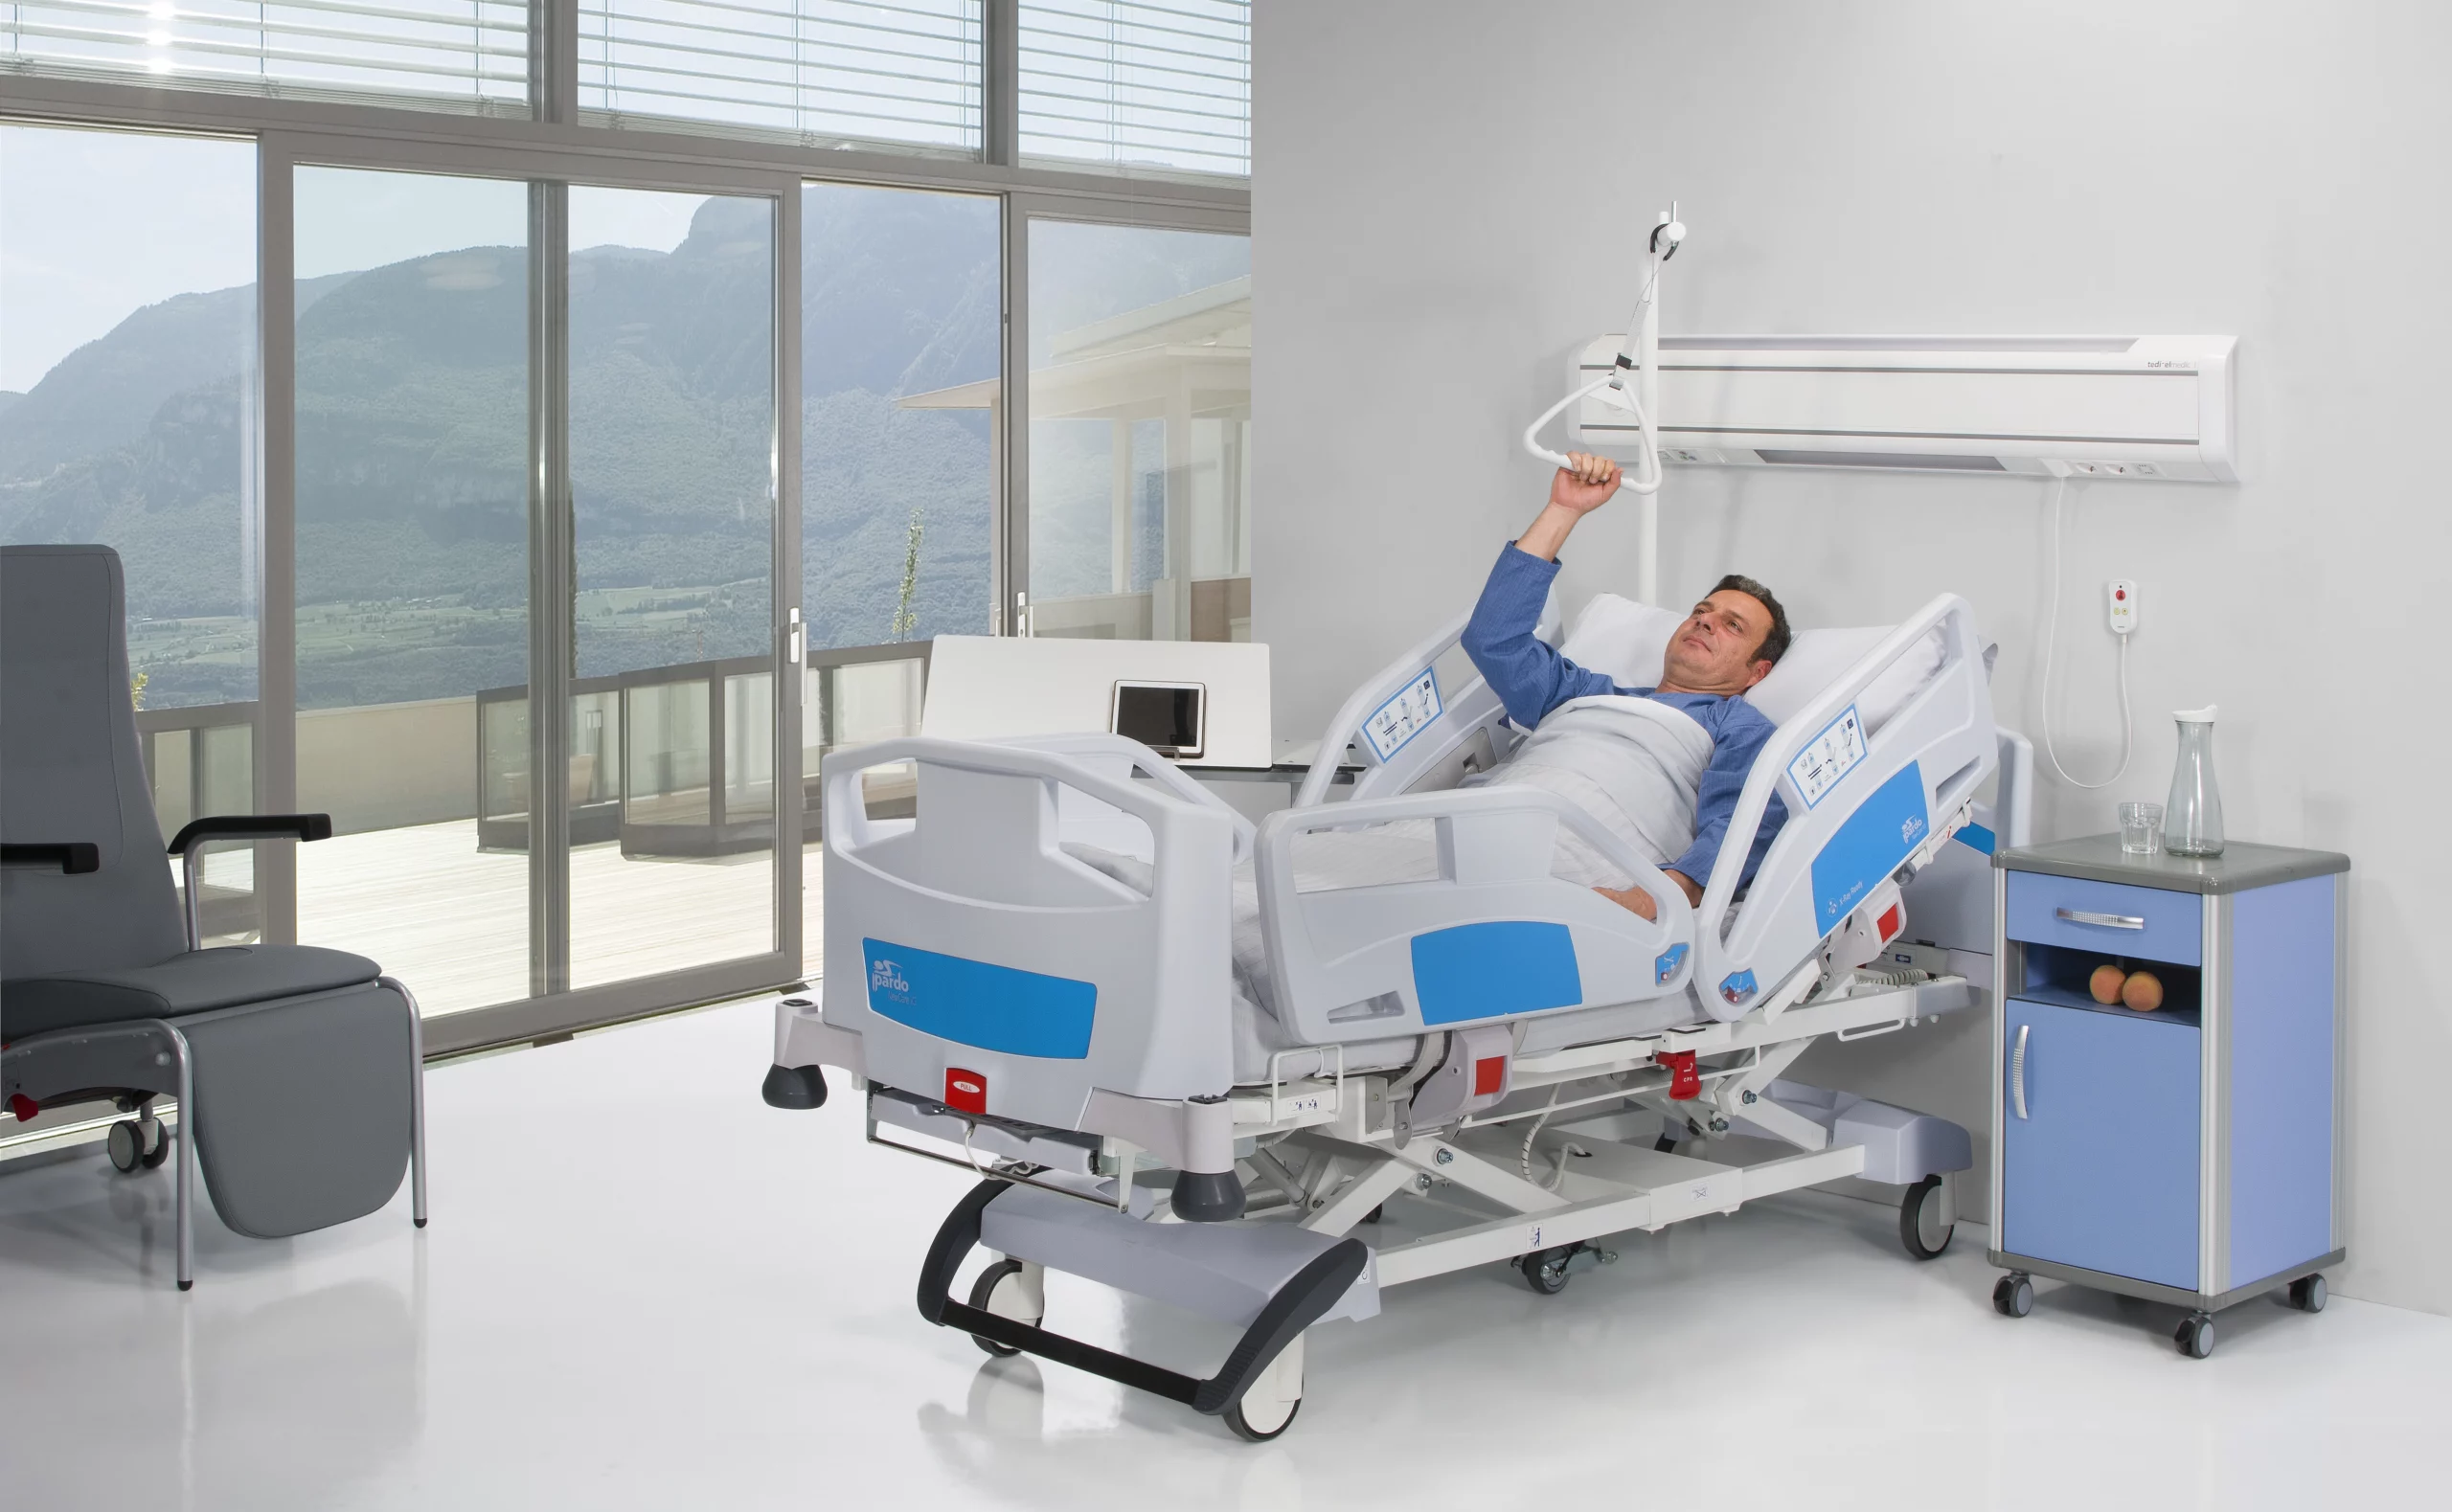 Innova V3 Hospital Bed